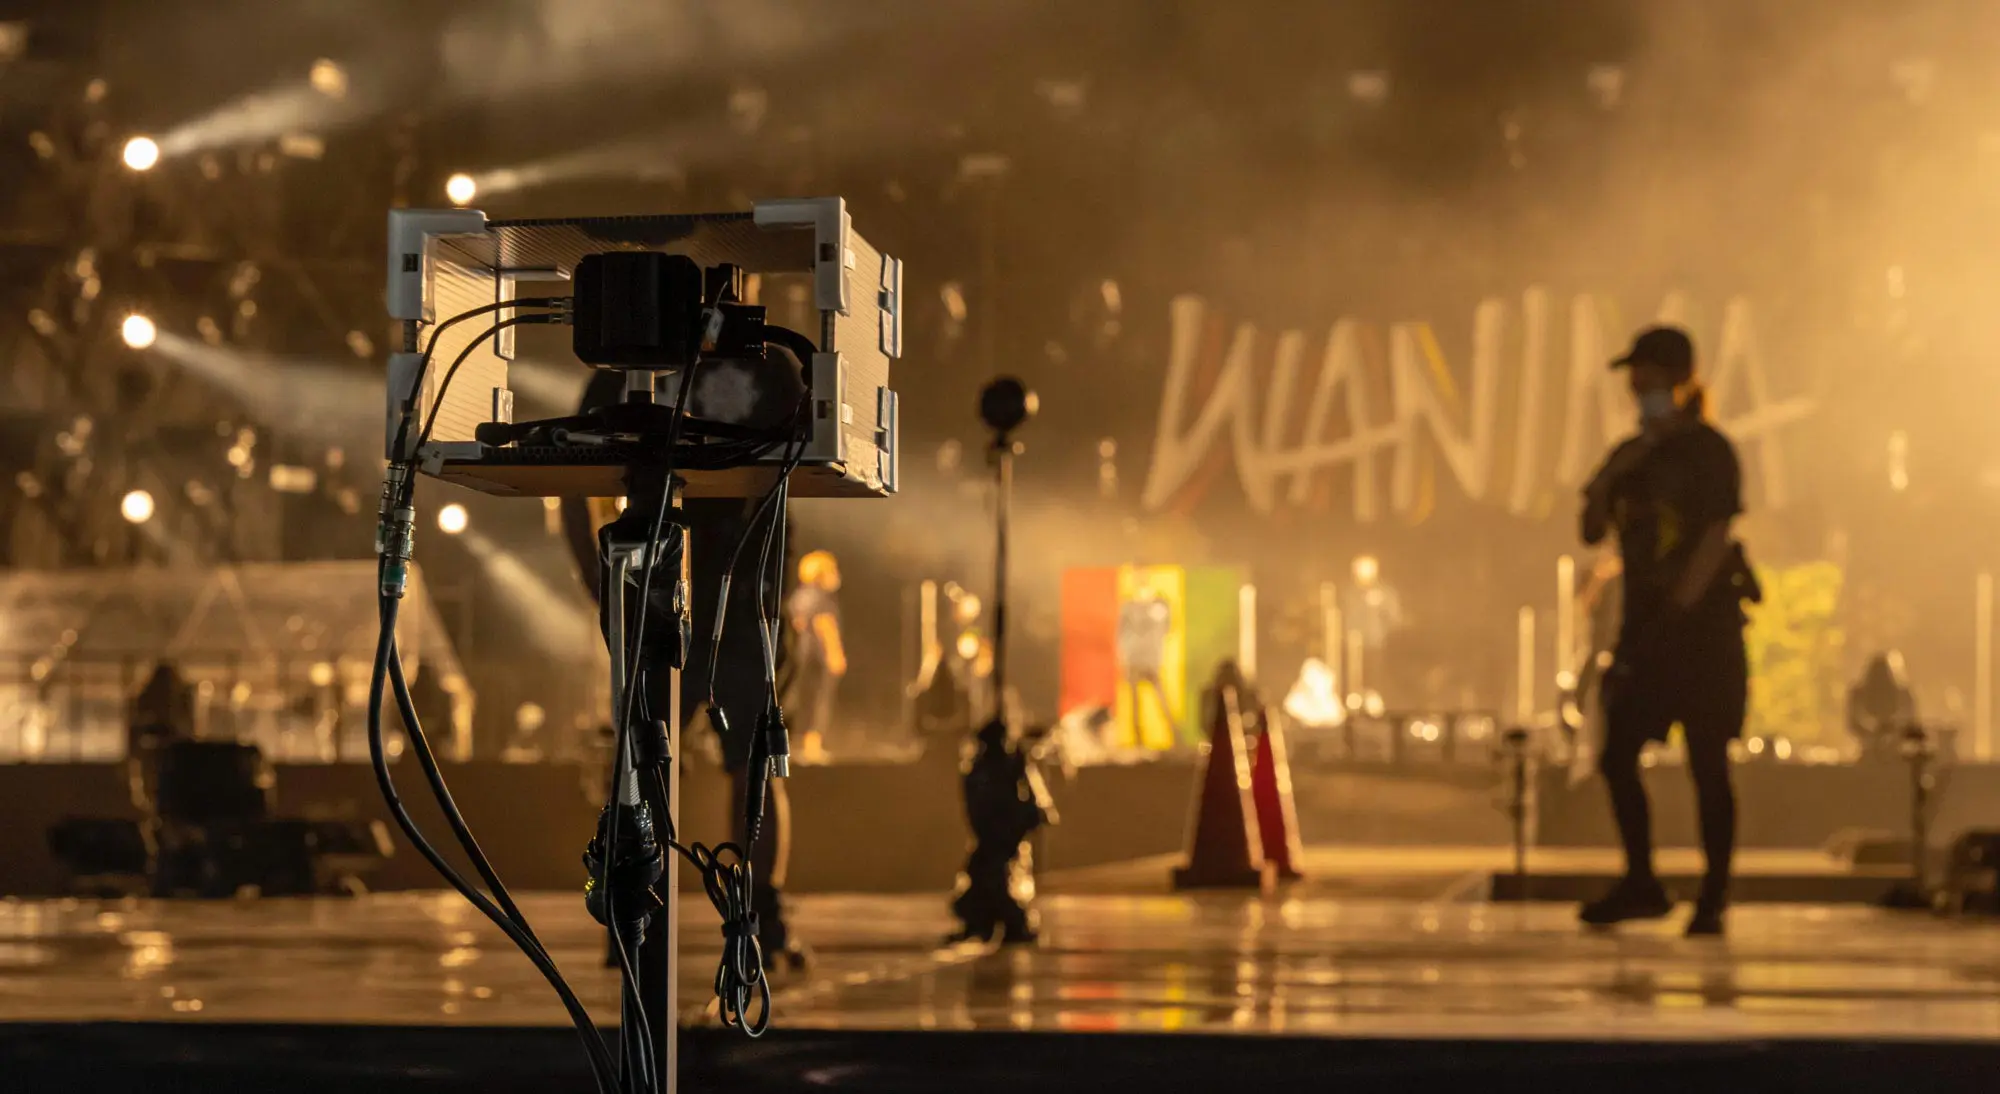 24 камеры Blackmagic, используемые для потоковой передачи концерта